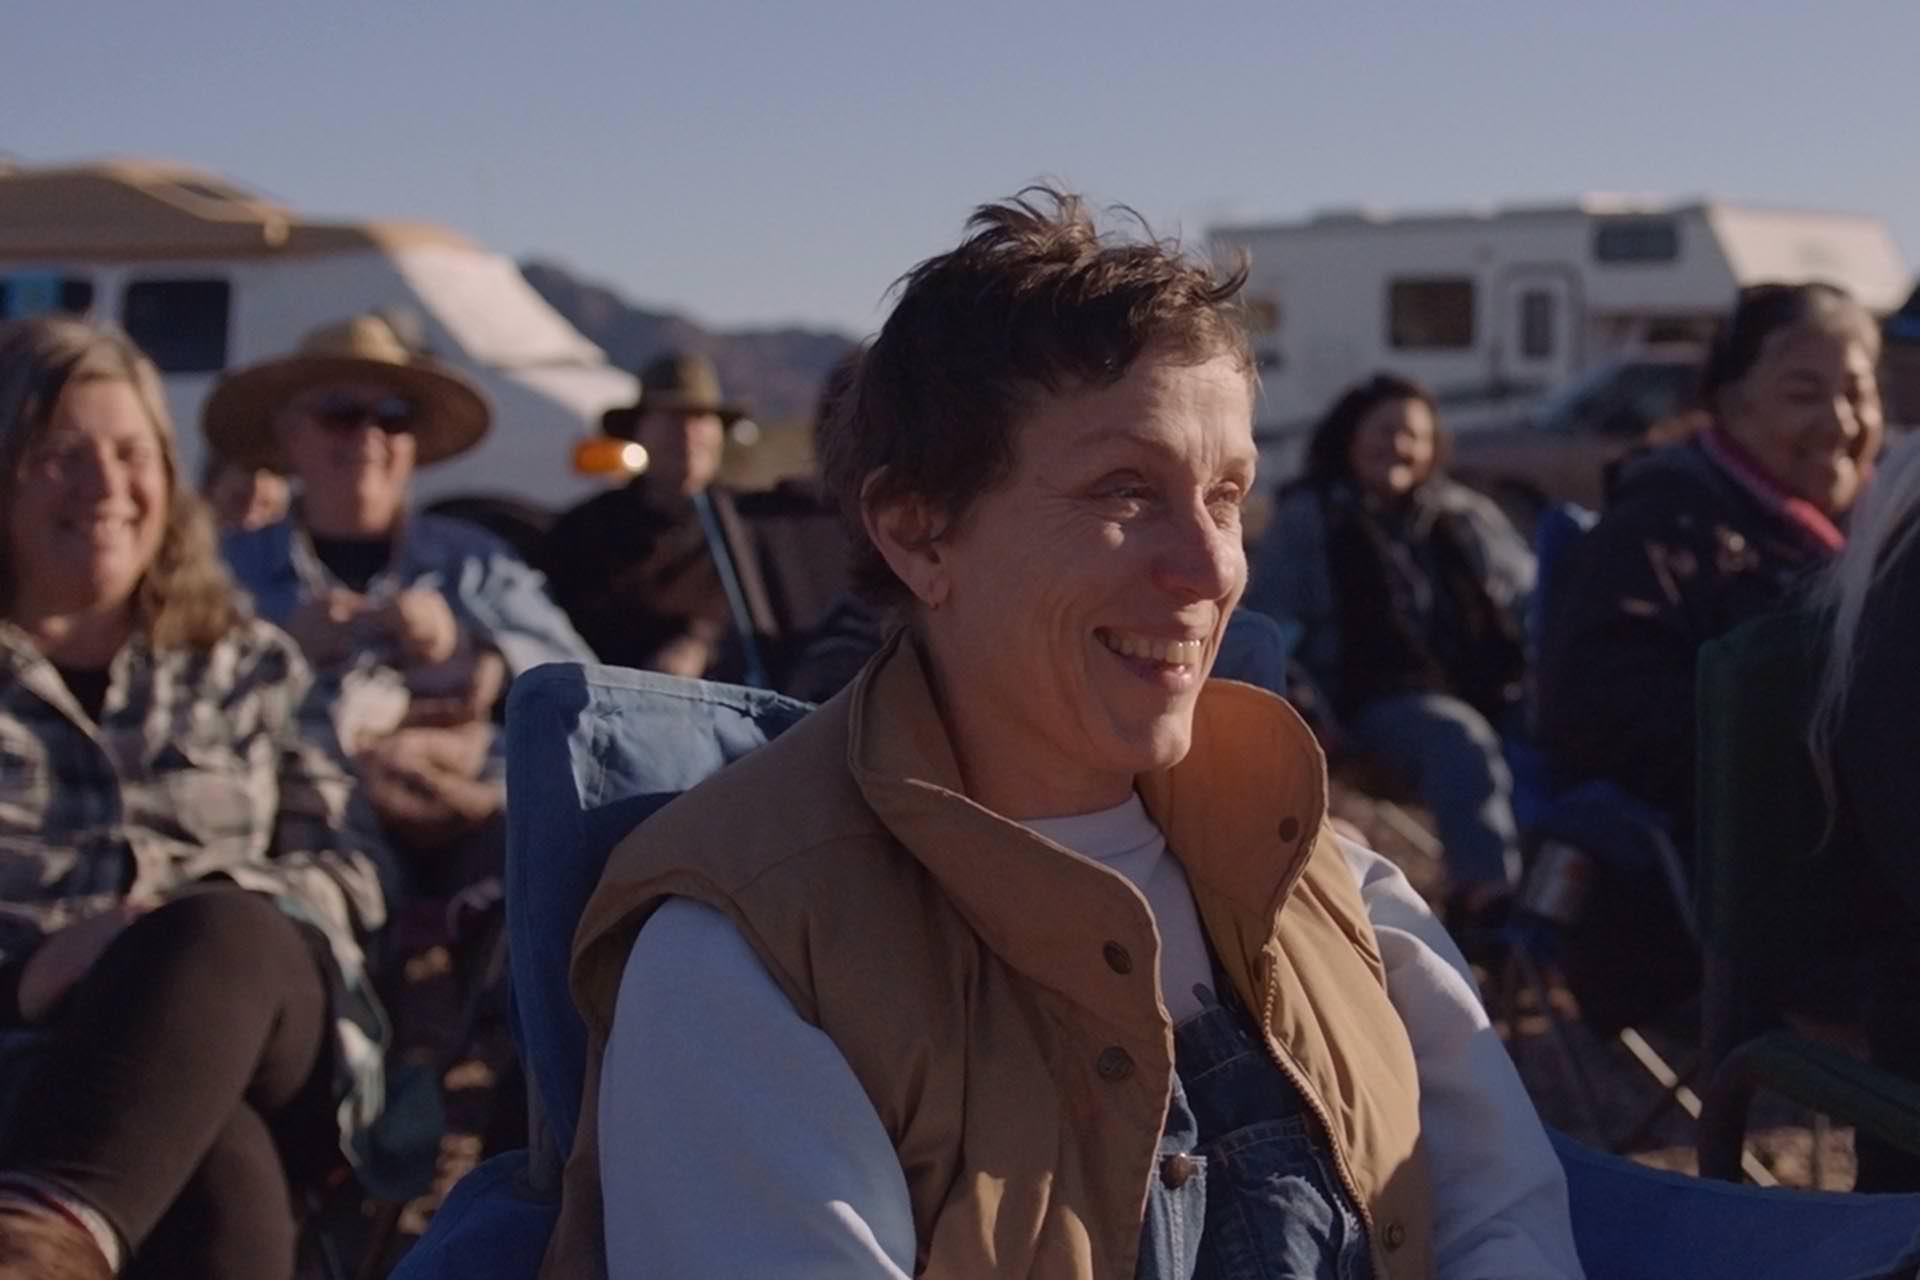 فرانسیس مک دورمند خوشحال در صحرای آریزونا در فیلم Nomadland